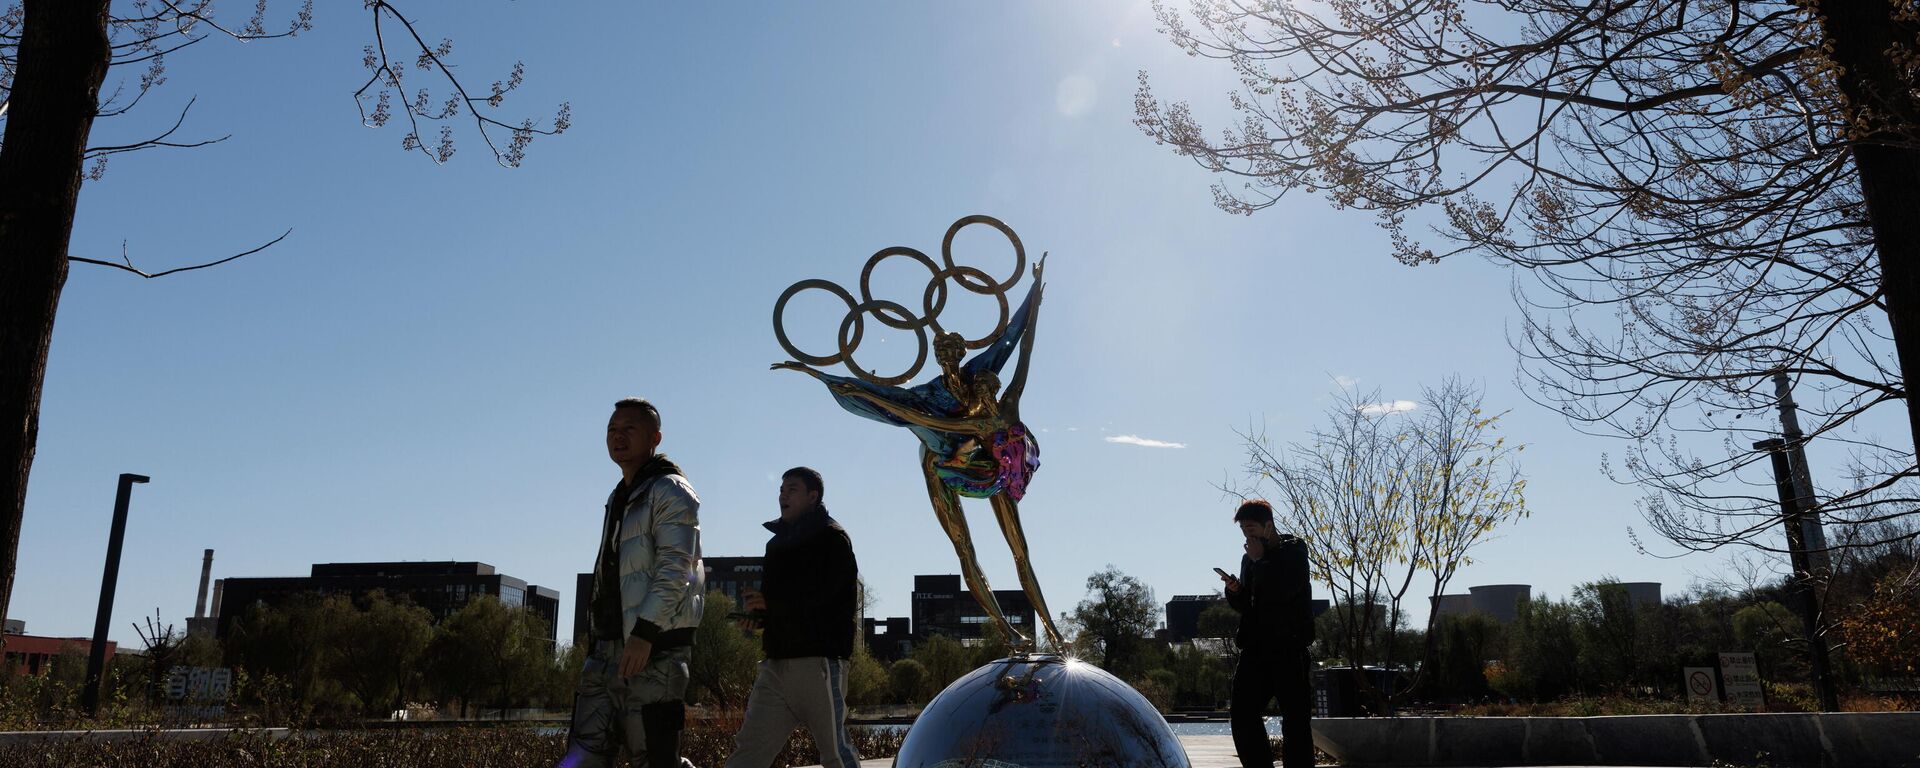 Люди проходя мимо скульптуры в виде олимпийских колец в Пекине - Sputnik Азербайджан, 1920, 23.11.2021